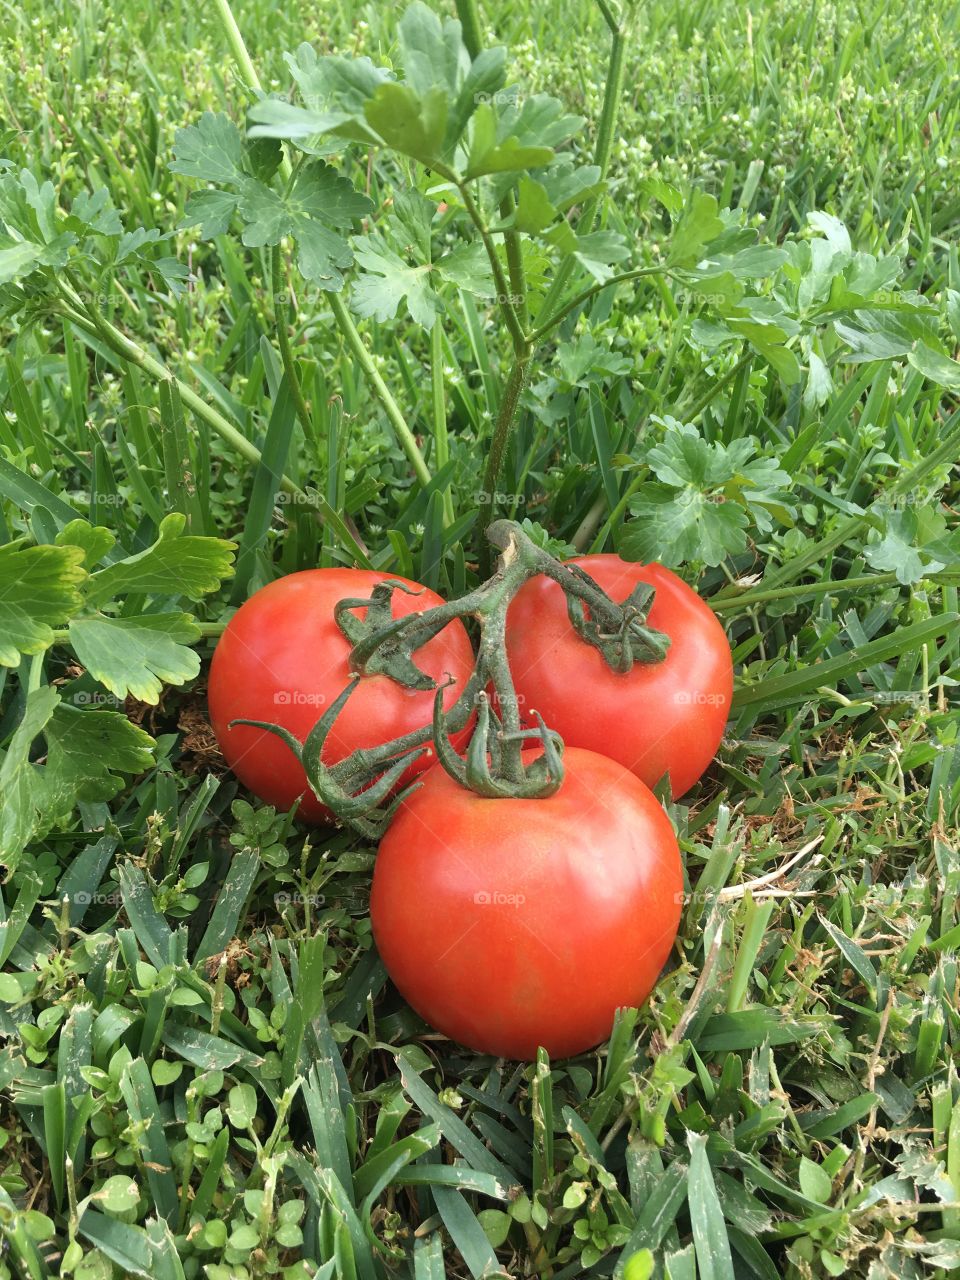 Pretty Tomatoes in the vine 